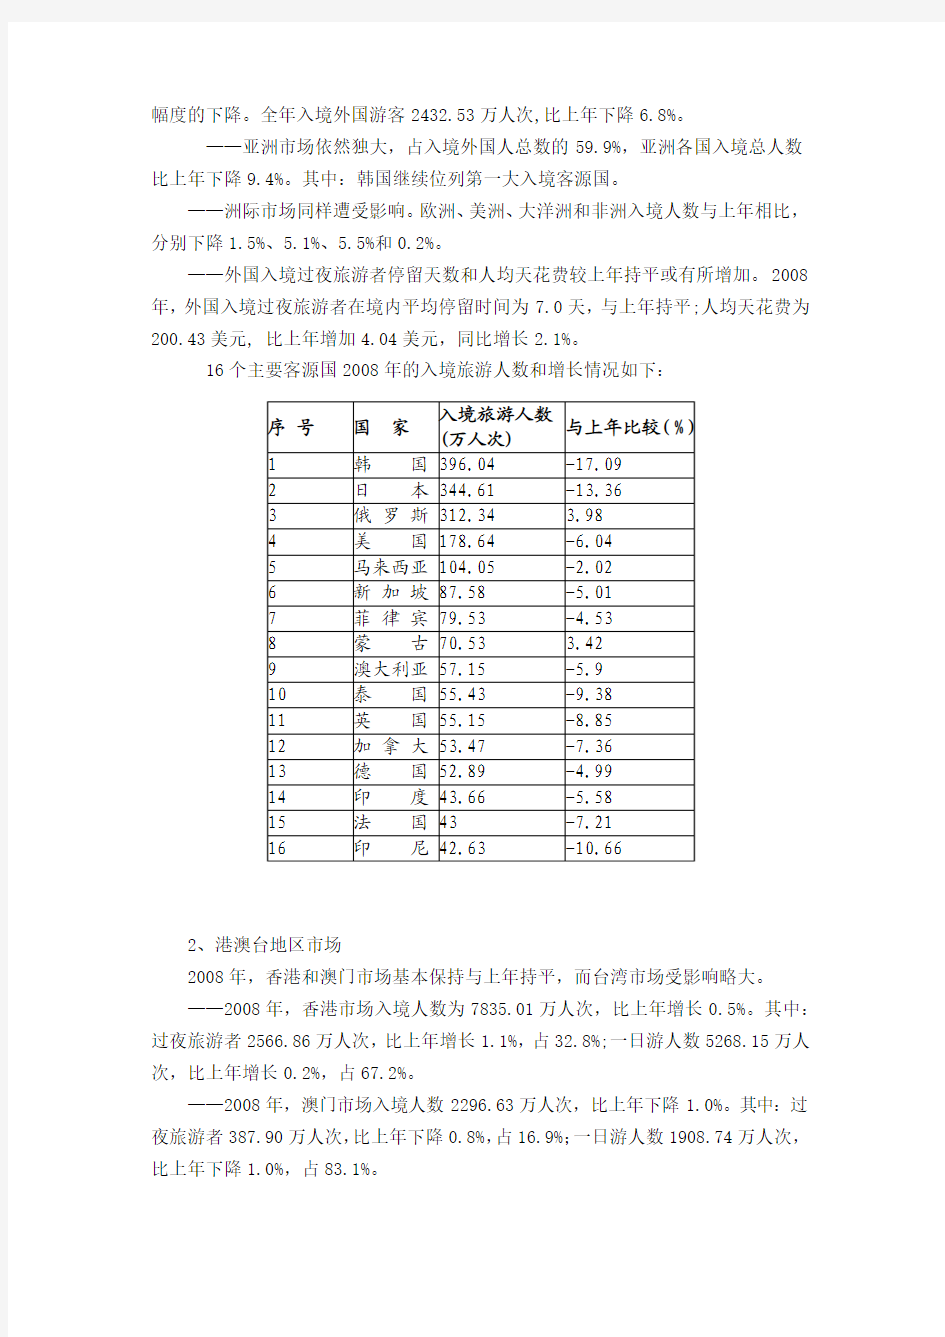 2008年中国旅游业统计公报